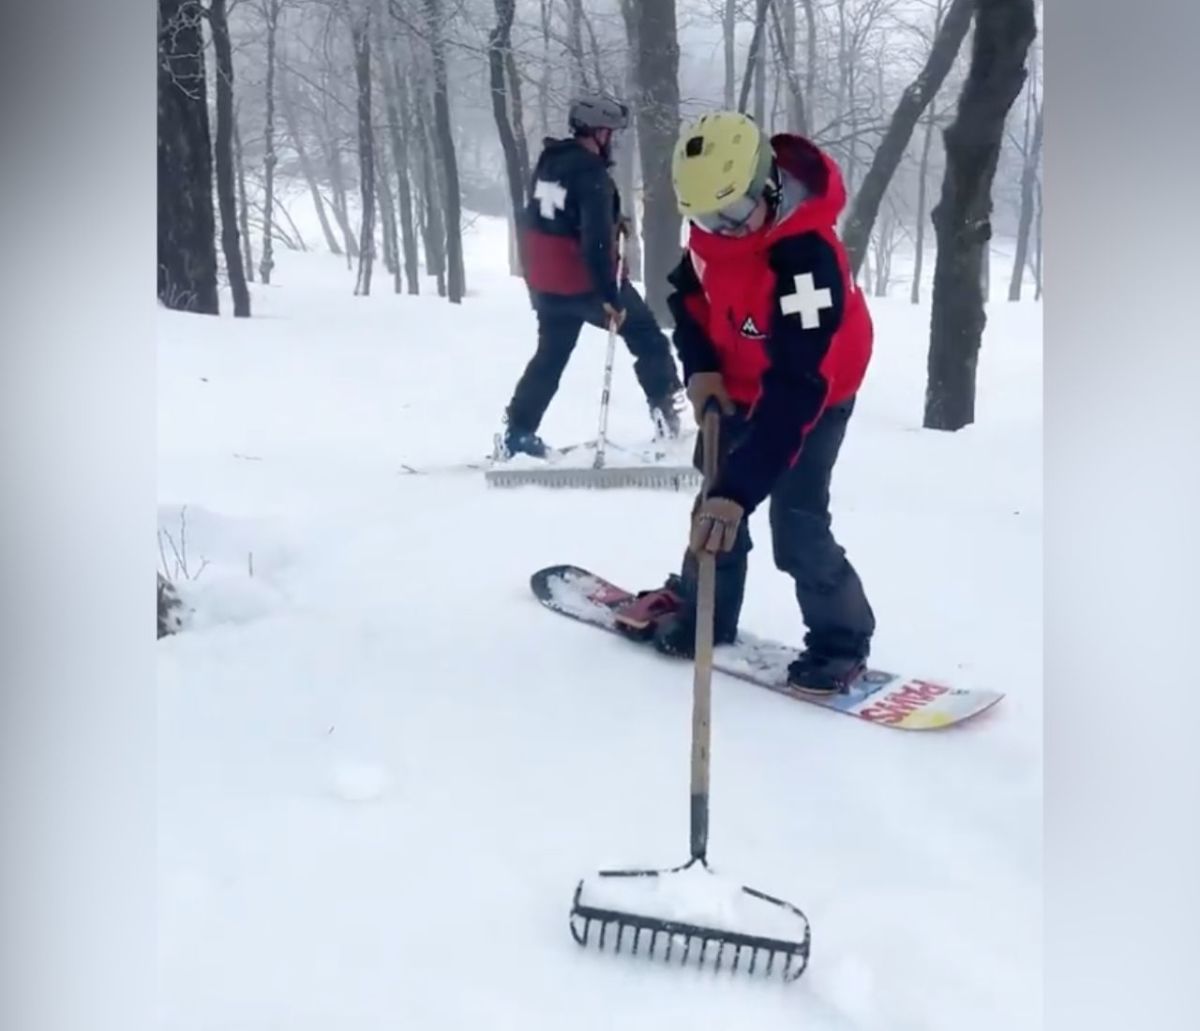 Quid Pro Snow - Ski Area Management